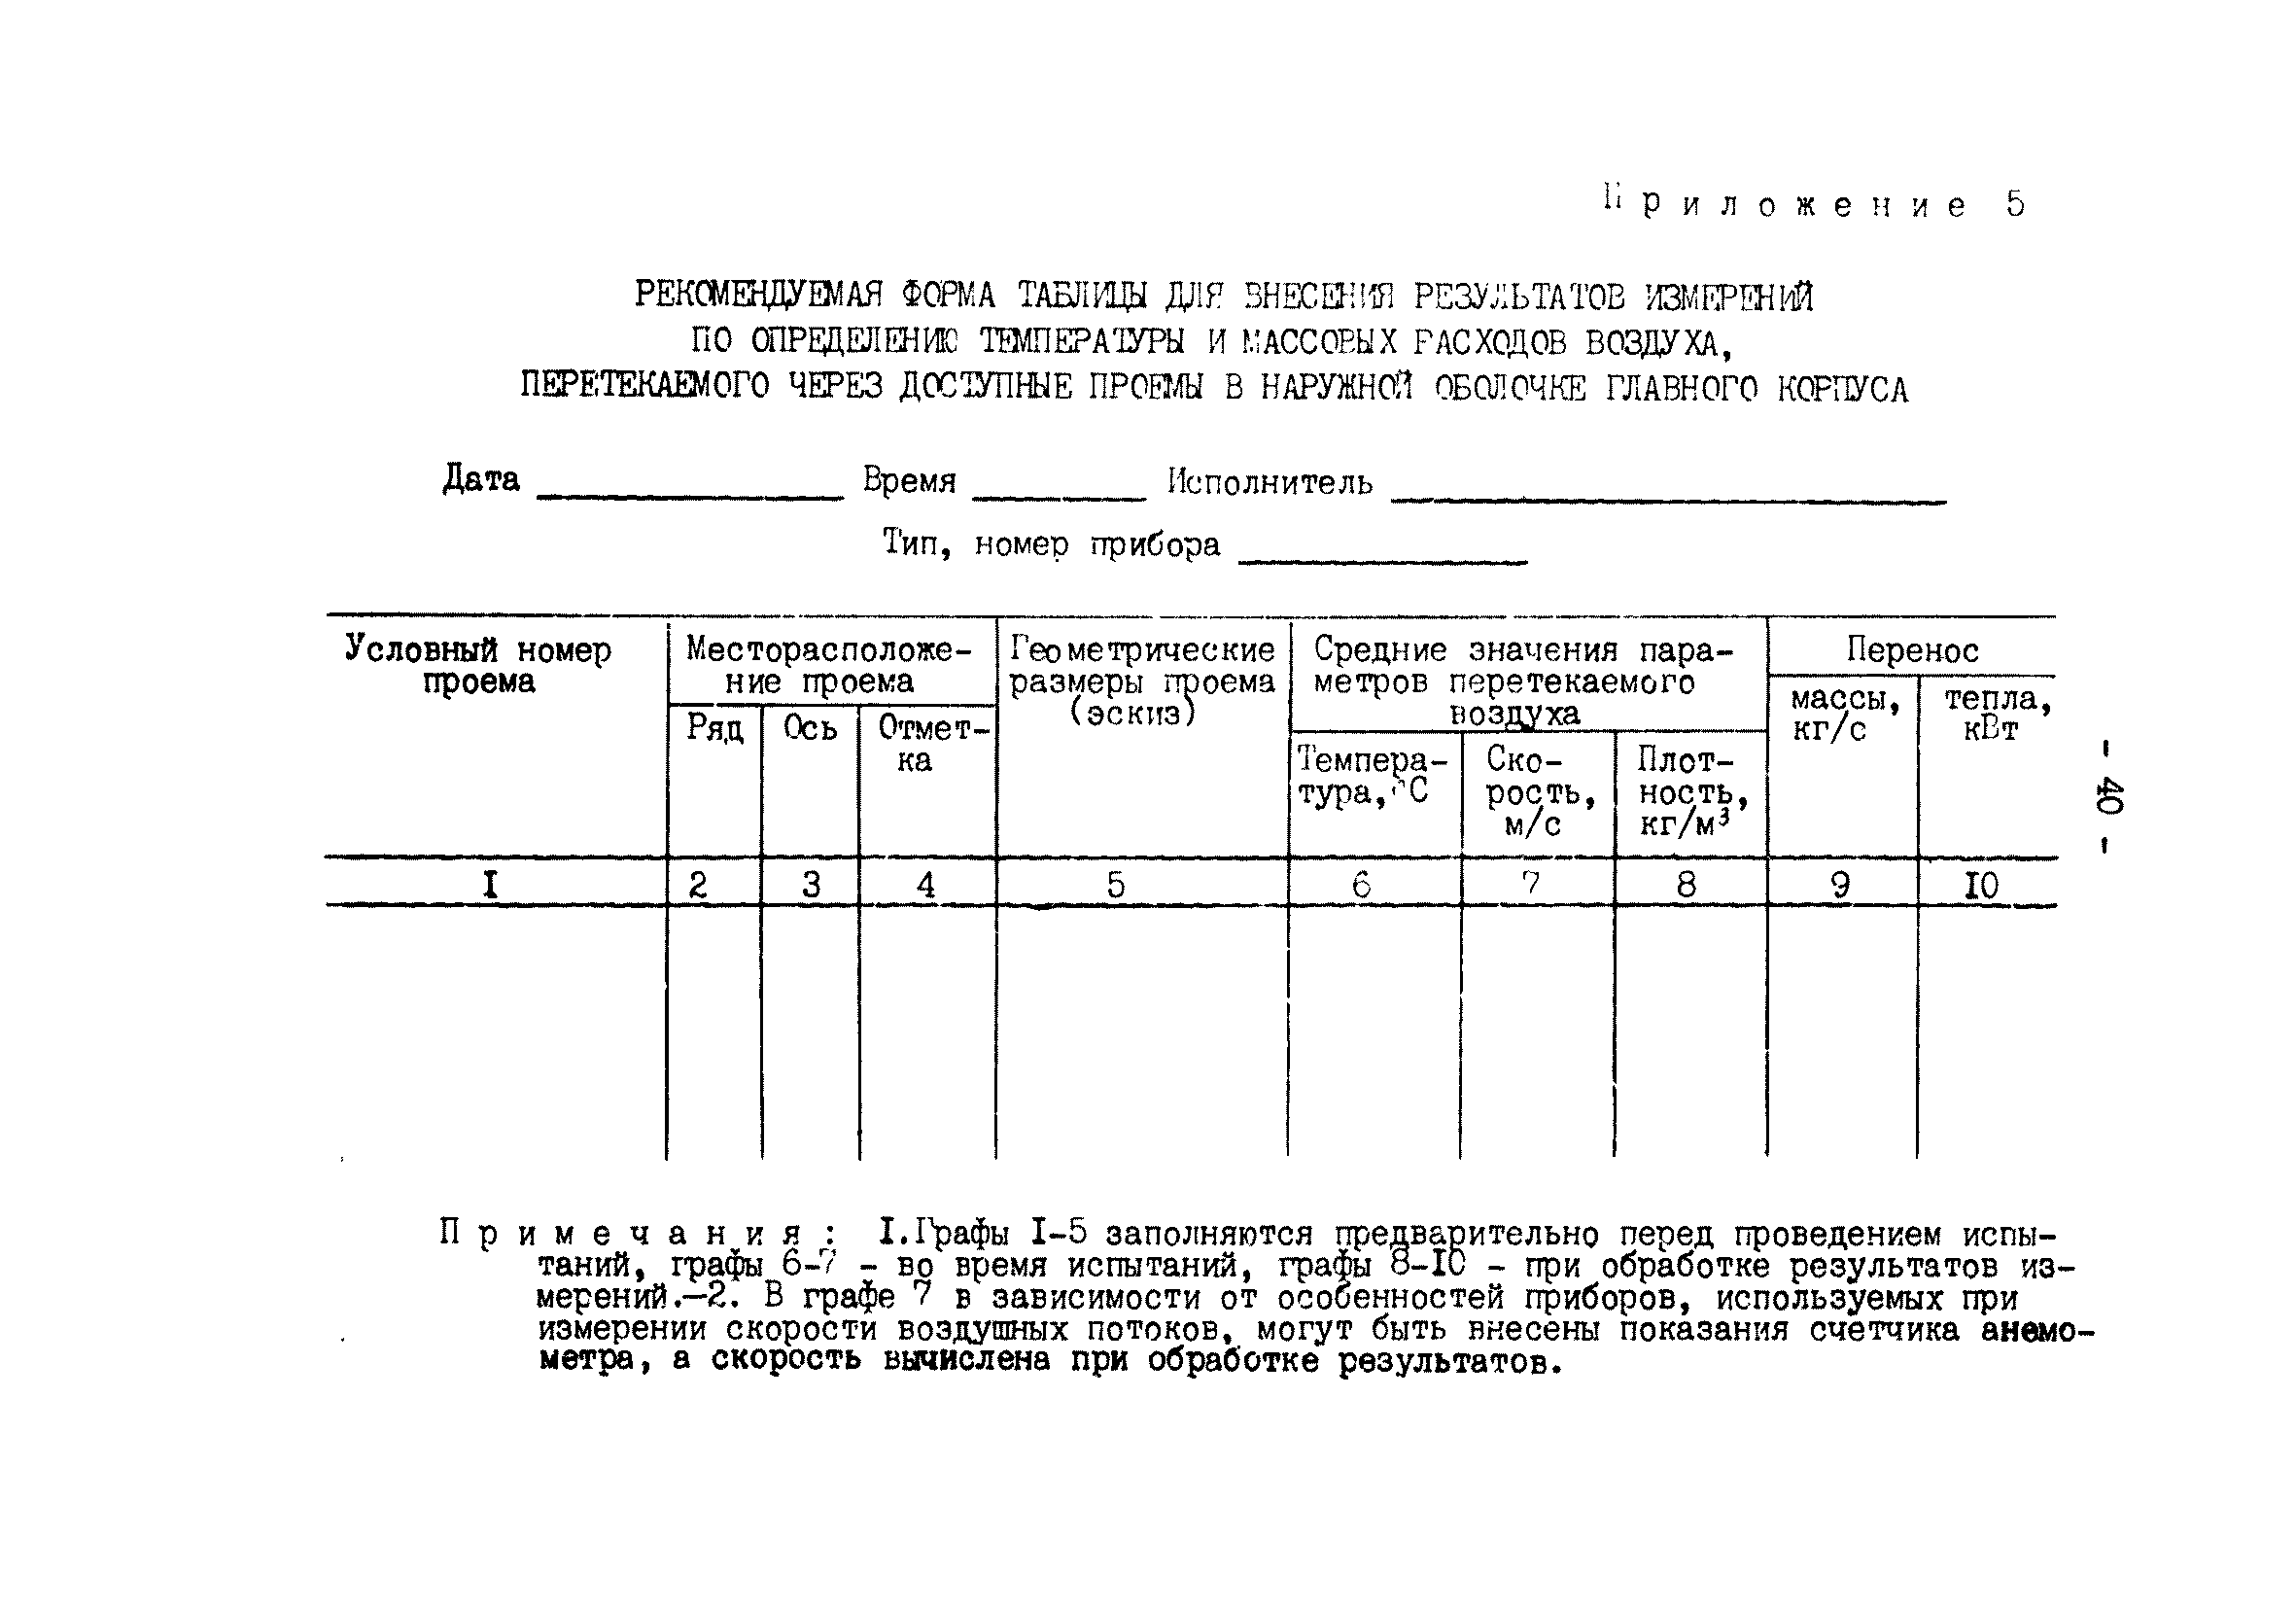 РД 34.21.401-90